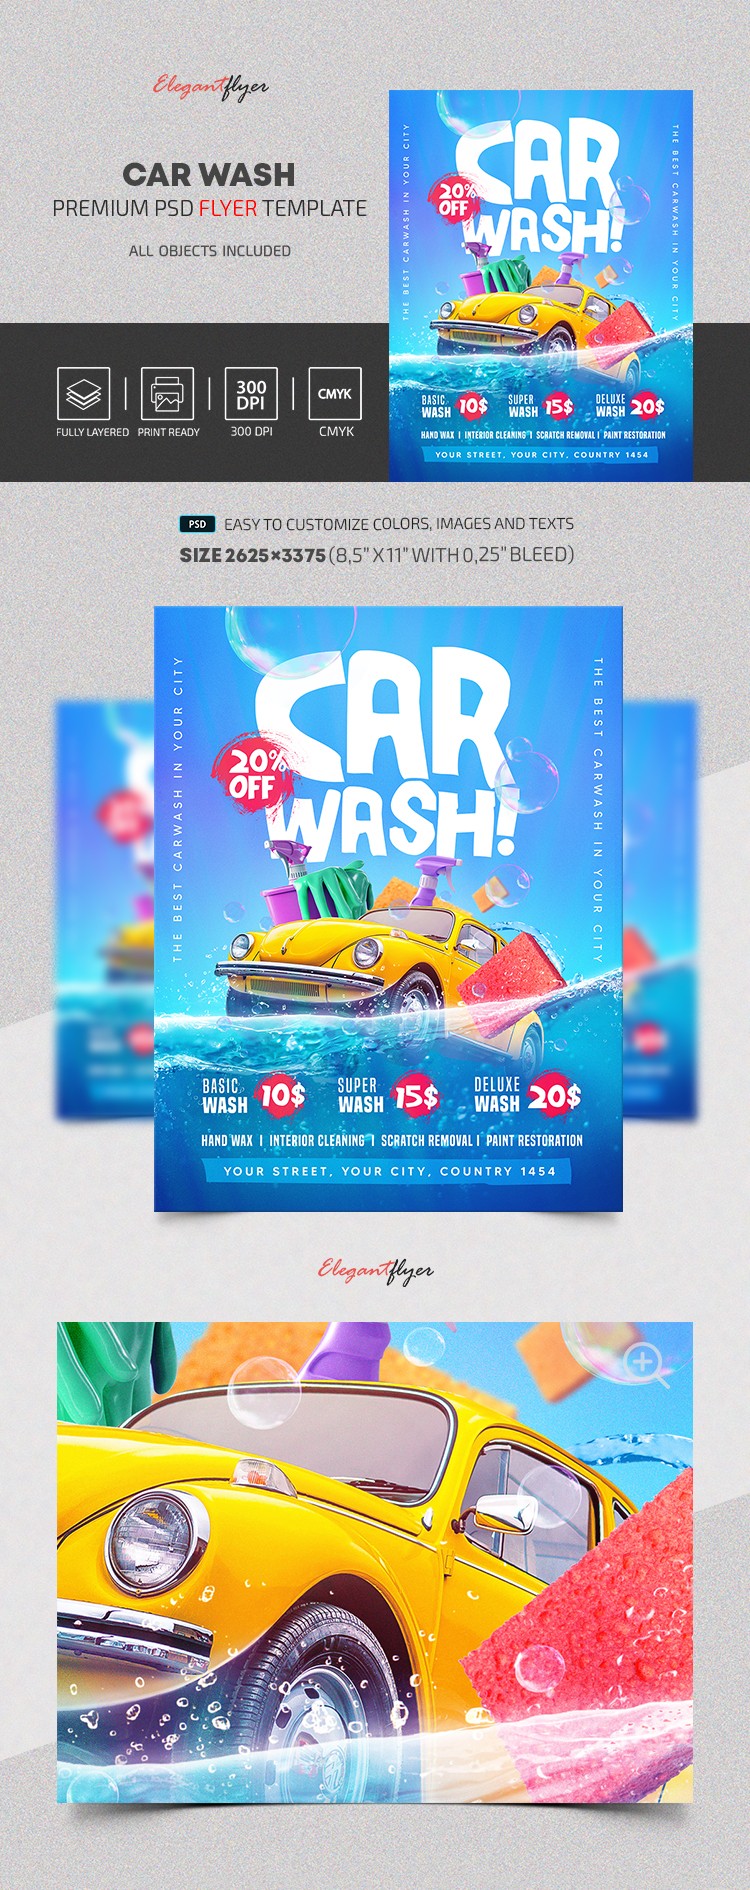 Car Wash Flyer by ElegantFlyer